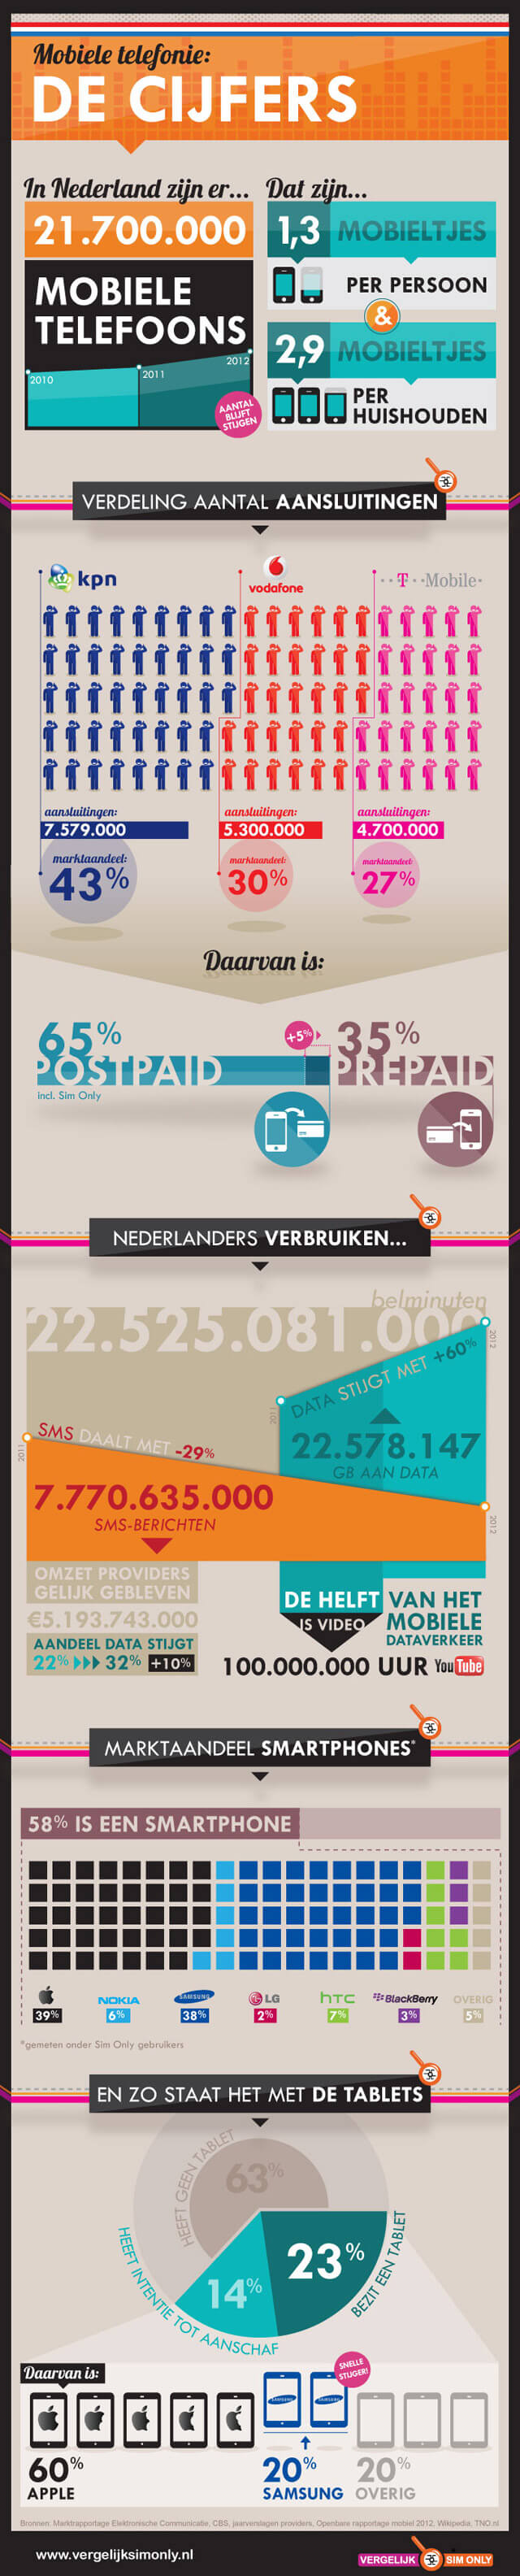 Mobiele Telefonie 2013: De Cijfers - Vergelijk Sim Only